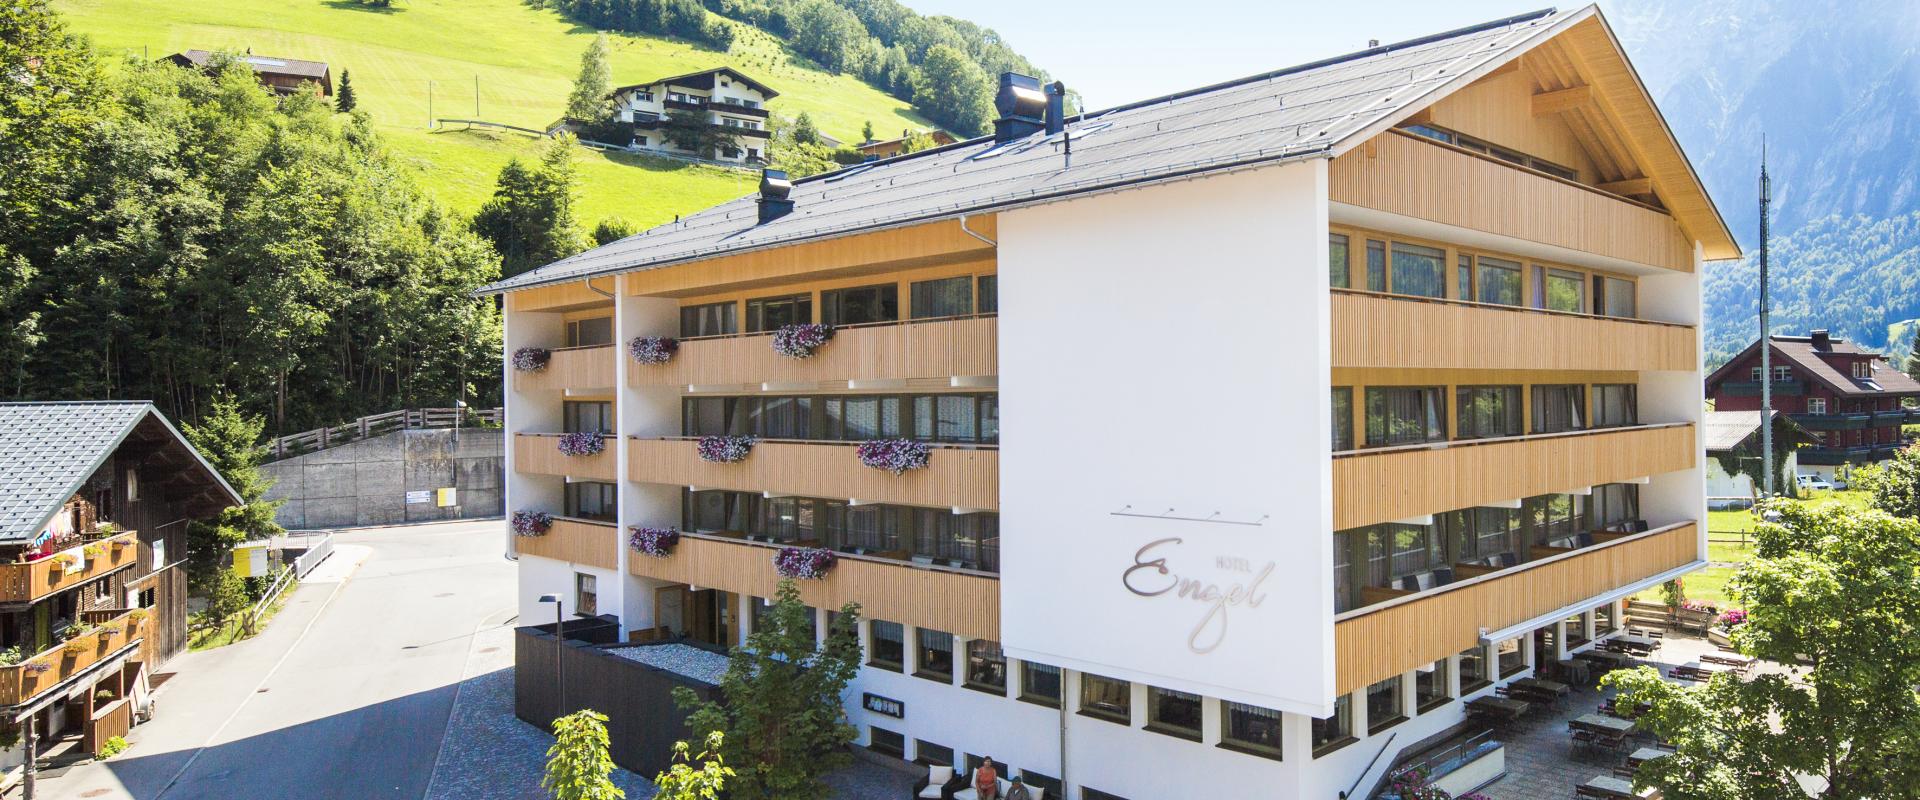 30432 Biker Hotel Engel in Vorarlberg.jpg